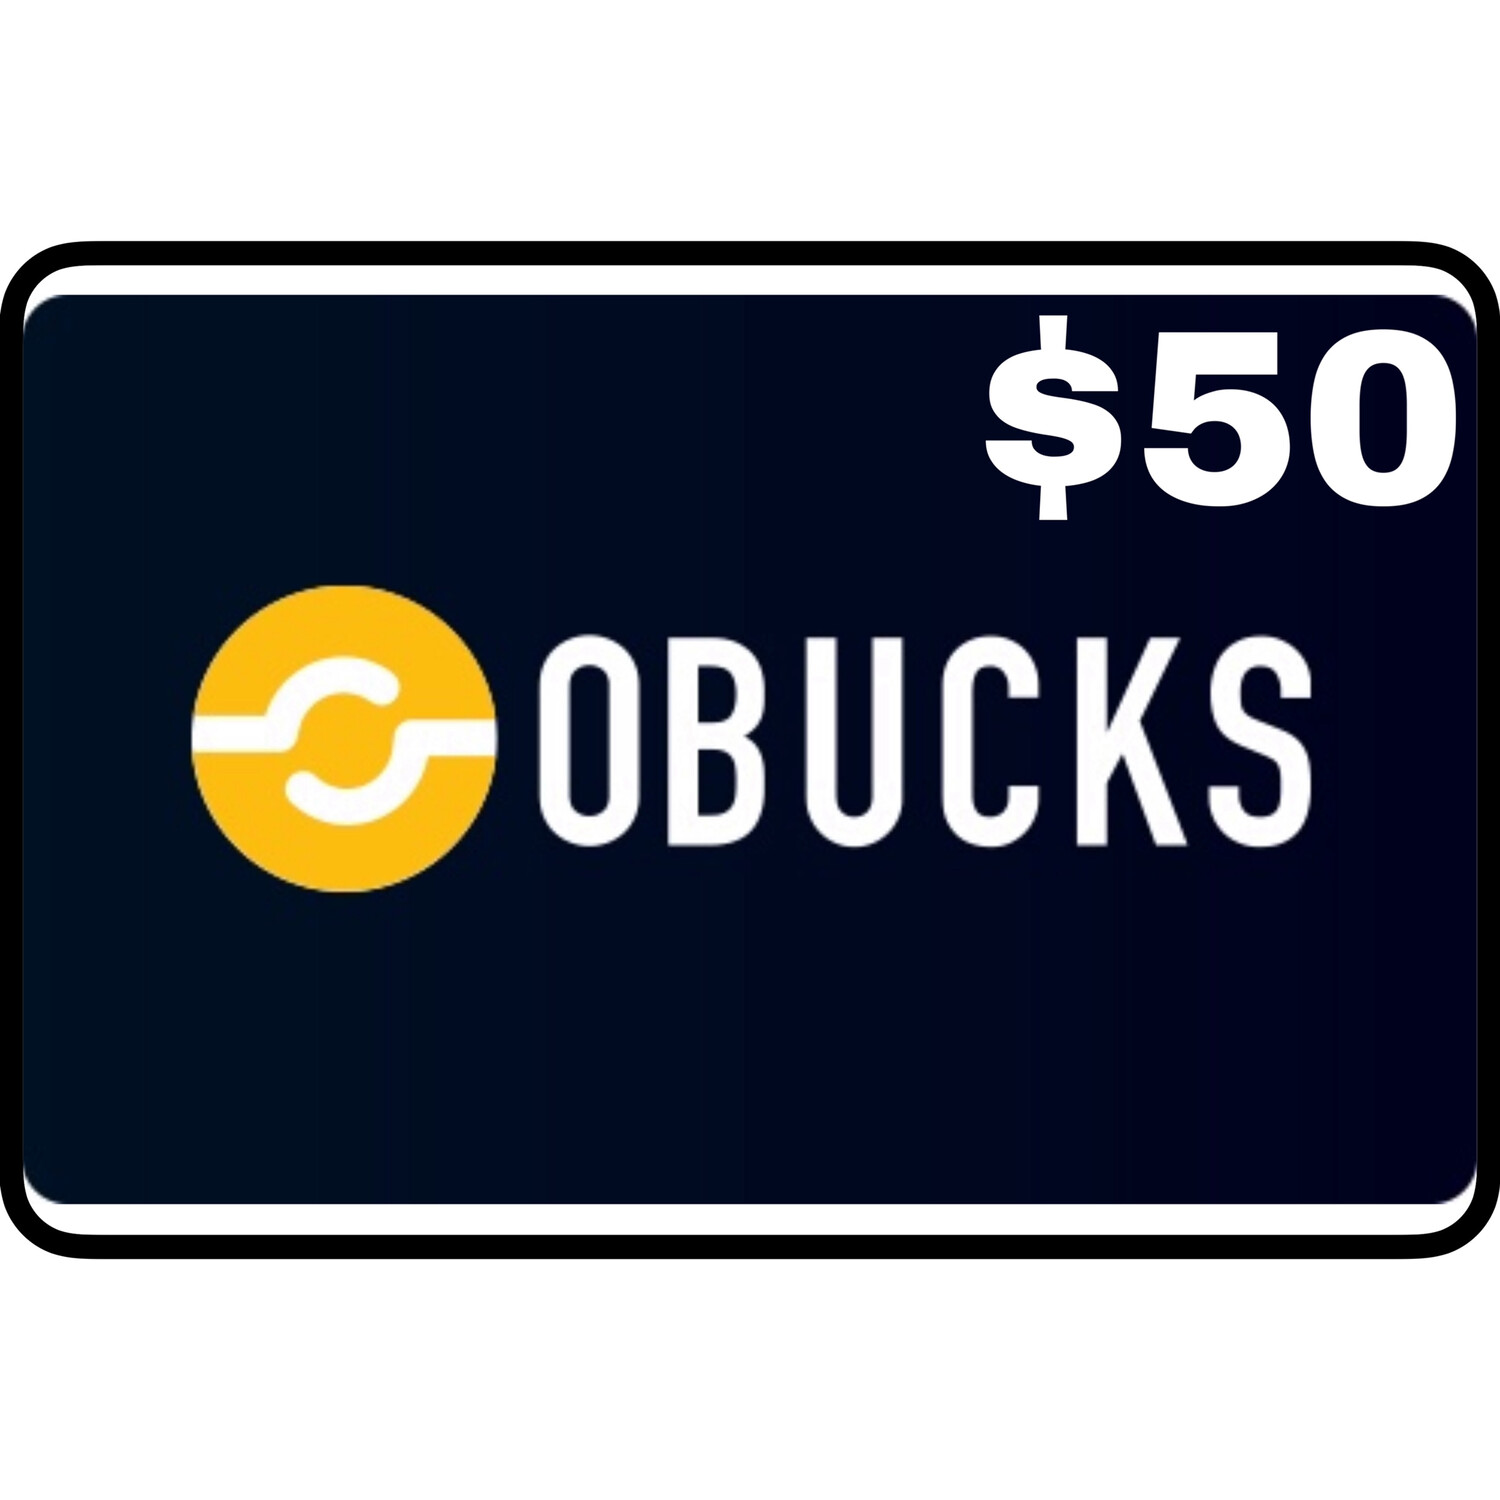 Openbucks Gift Card $50 (Obucks)